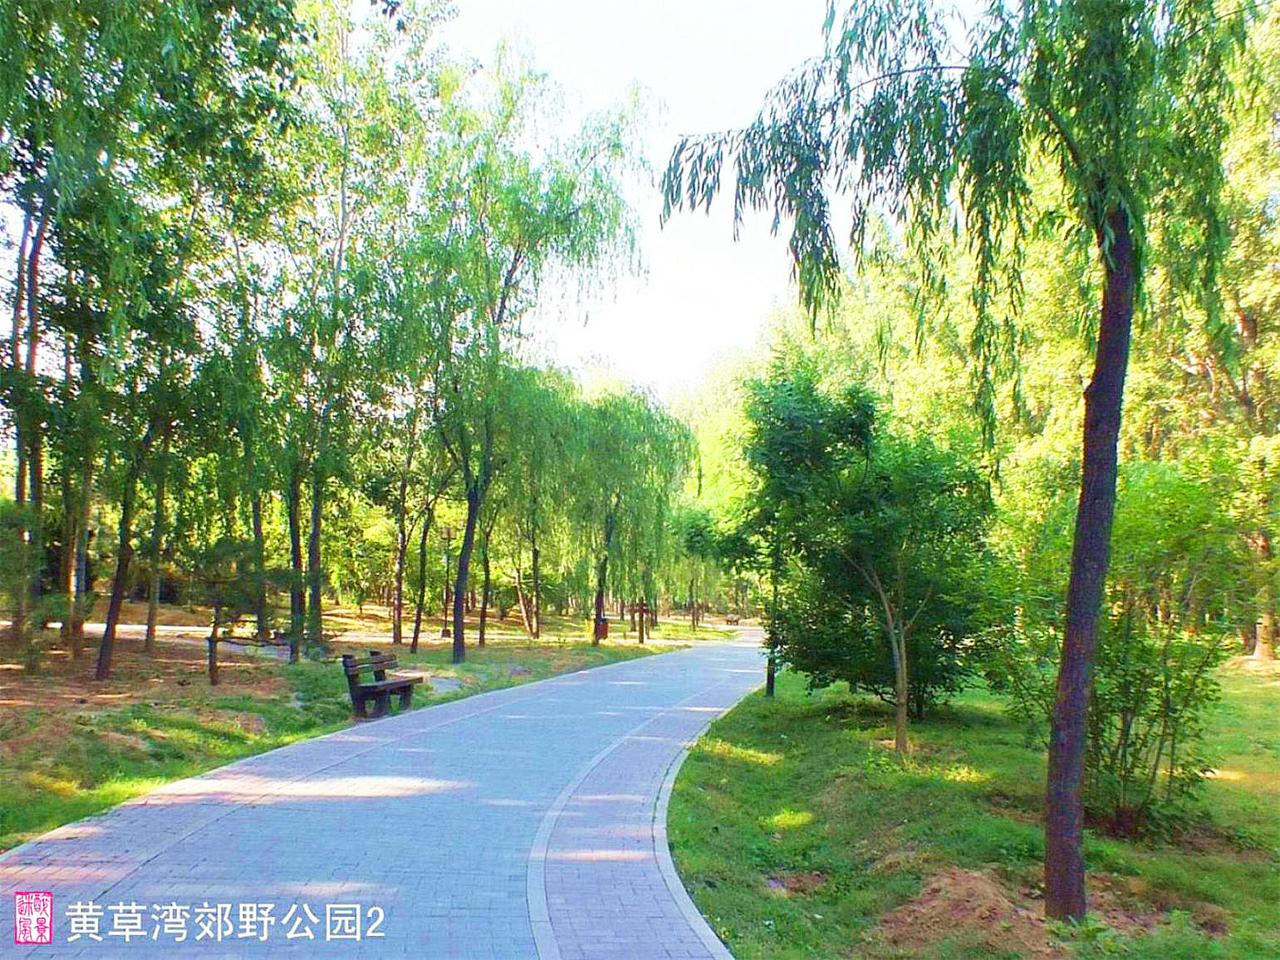 【北京的北郊13摄影图片】黄草湾郊野公园风光旅游_醉